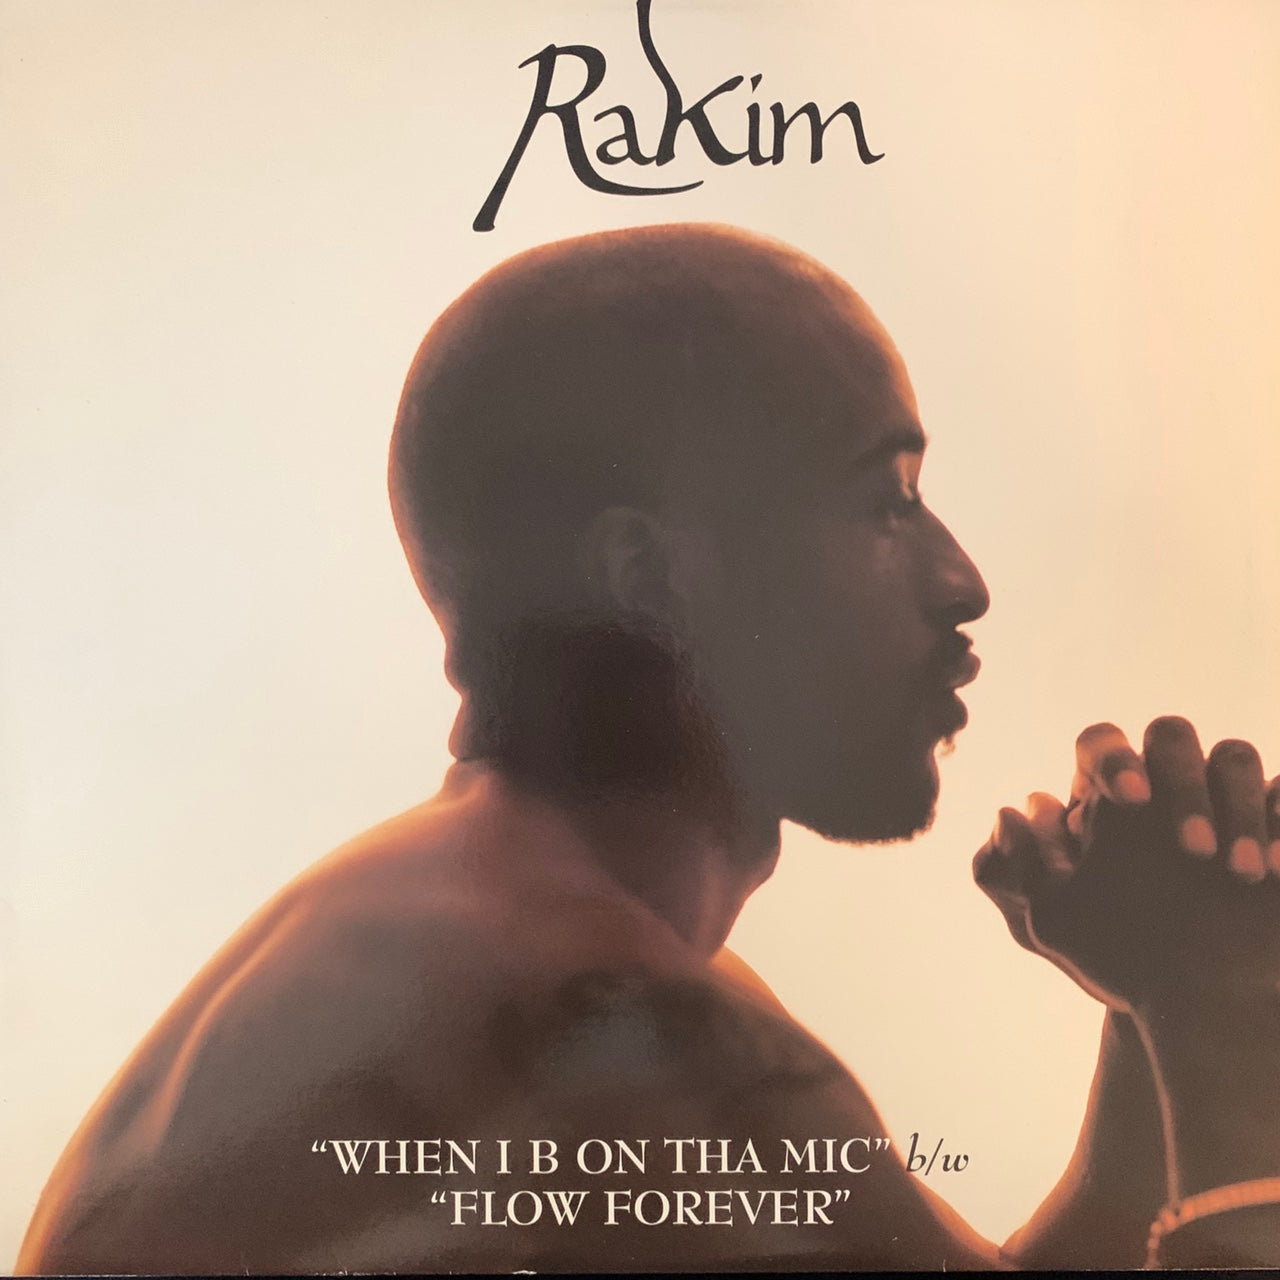 Rakim “When I B On Tha Mic” / “Flow Forever” 6 Version 12inch Vinyl